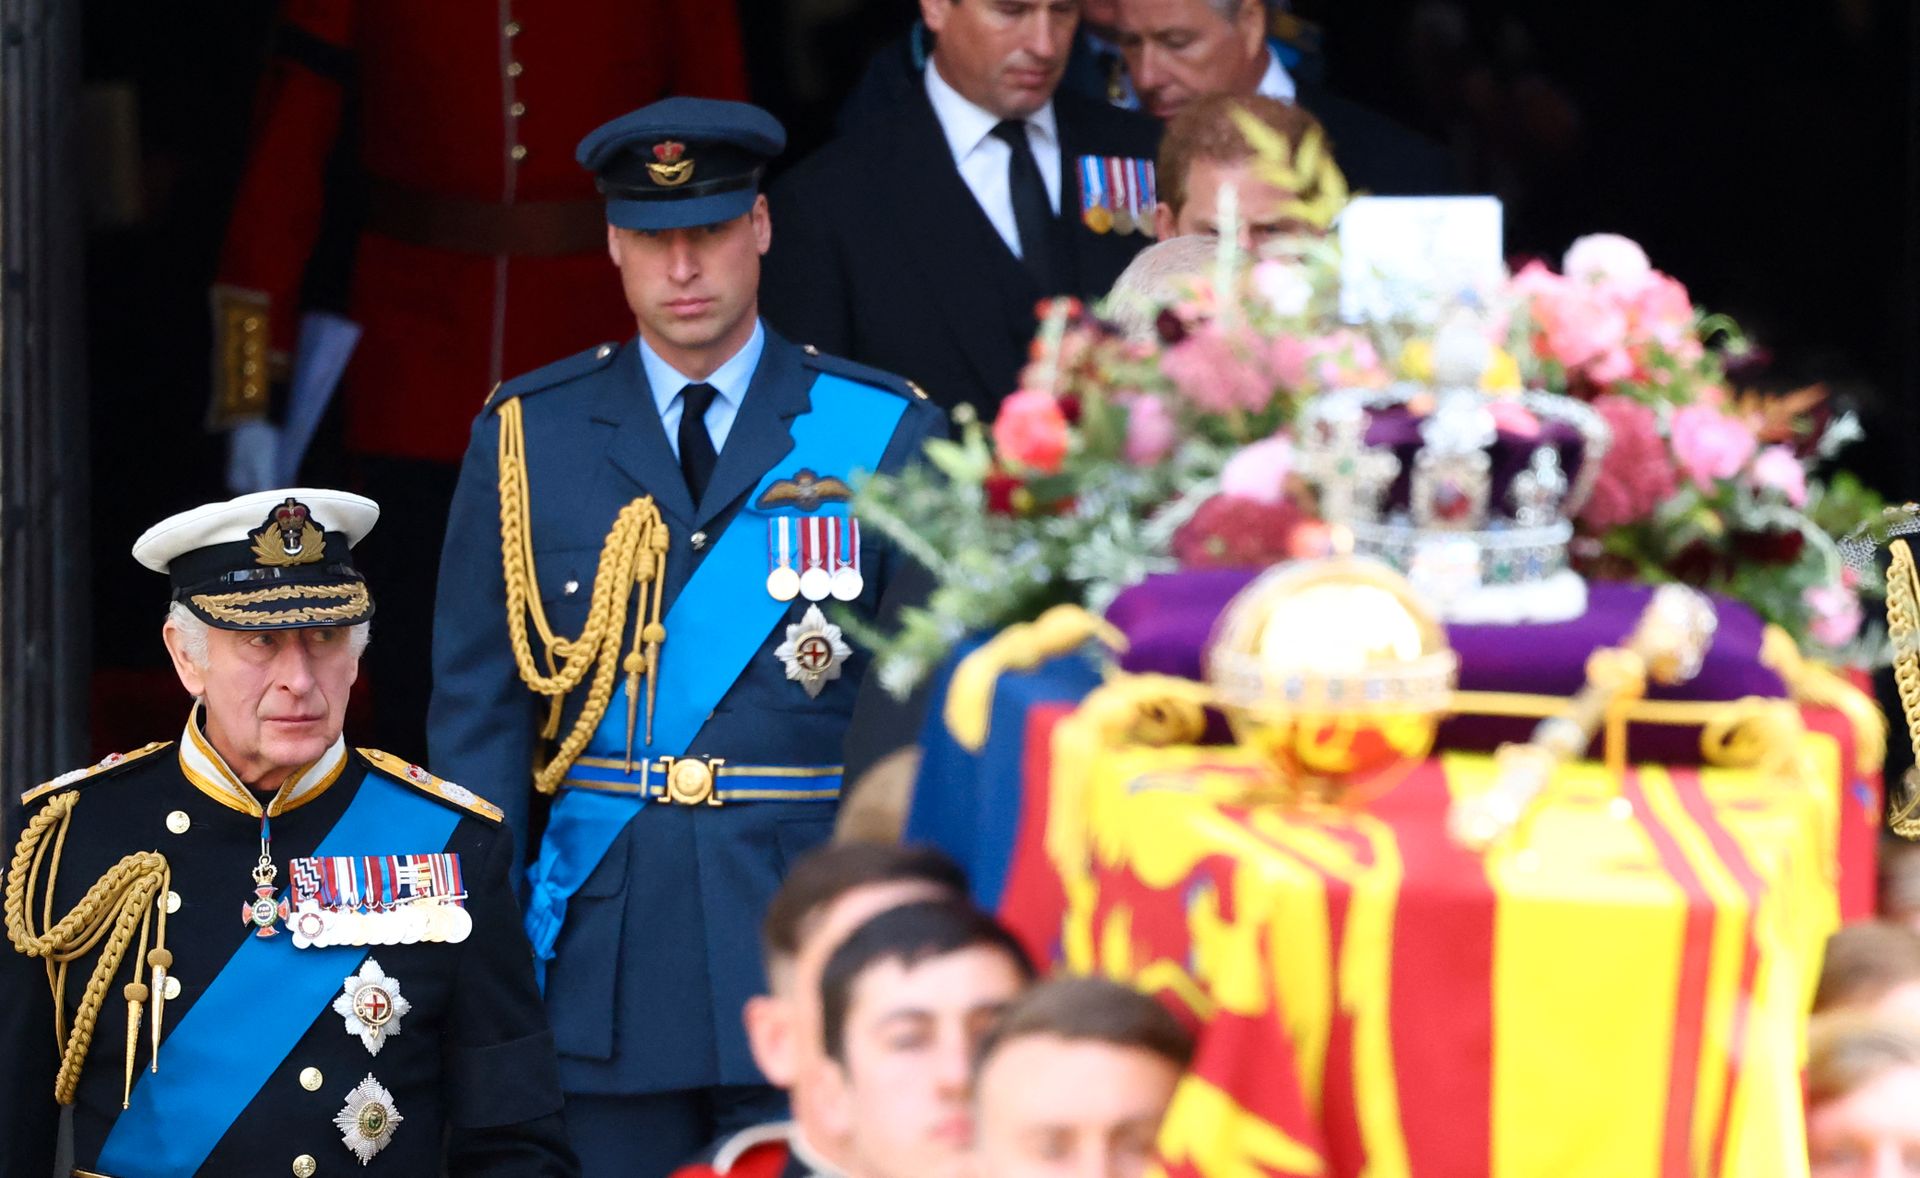 To menn, én gammel og en yngre, med hatter og blå jakker med utsmykkinger og blå bånd på, går bak en kiste som er dekket av blomster, et flagg og har en stor krone oppå.